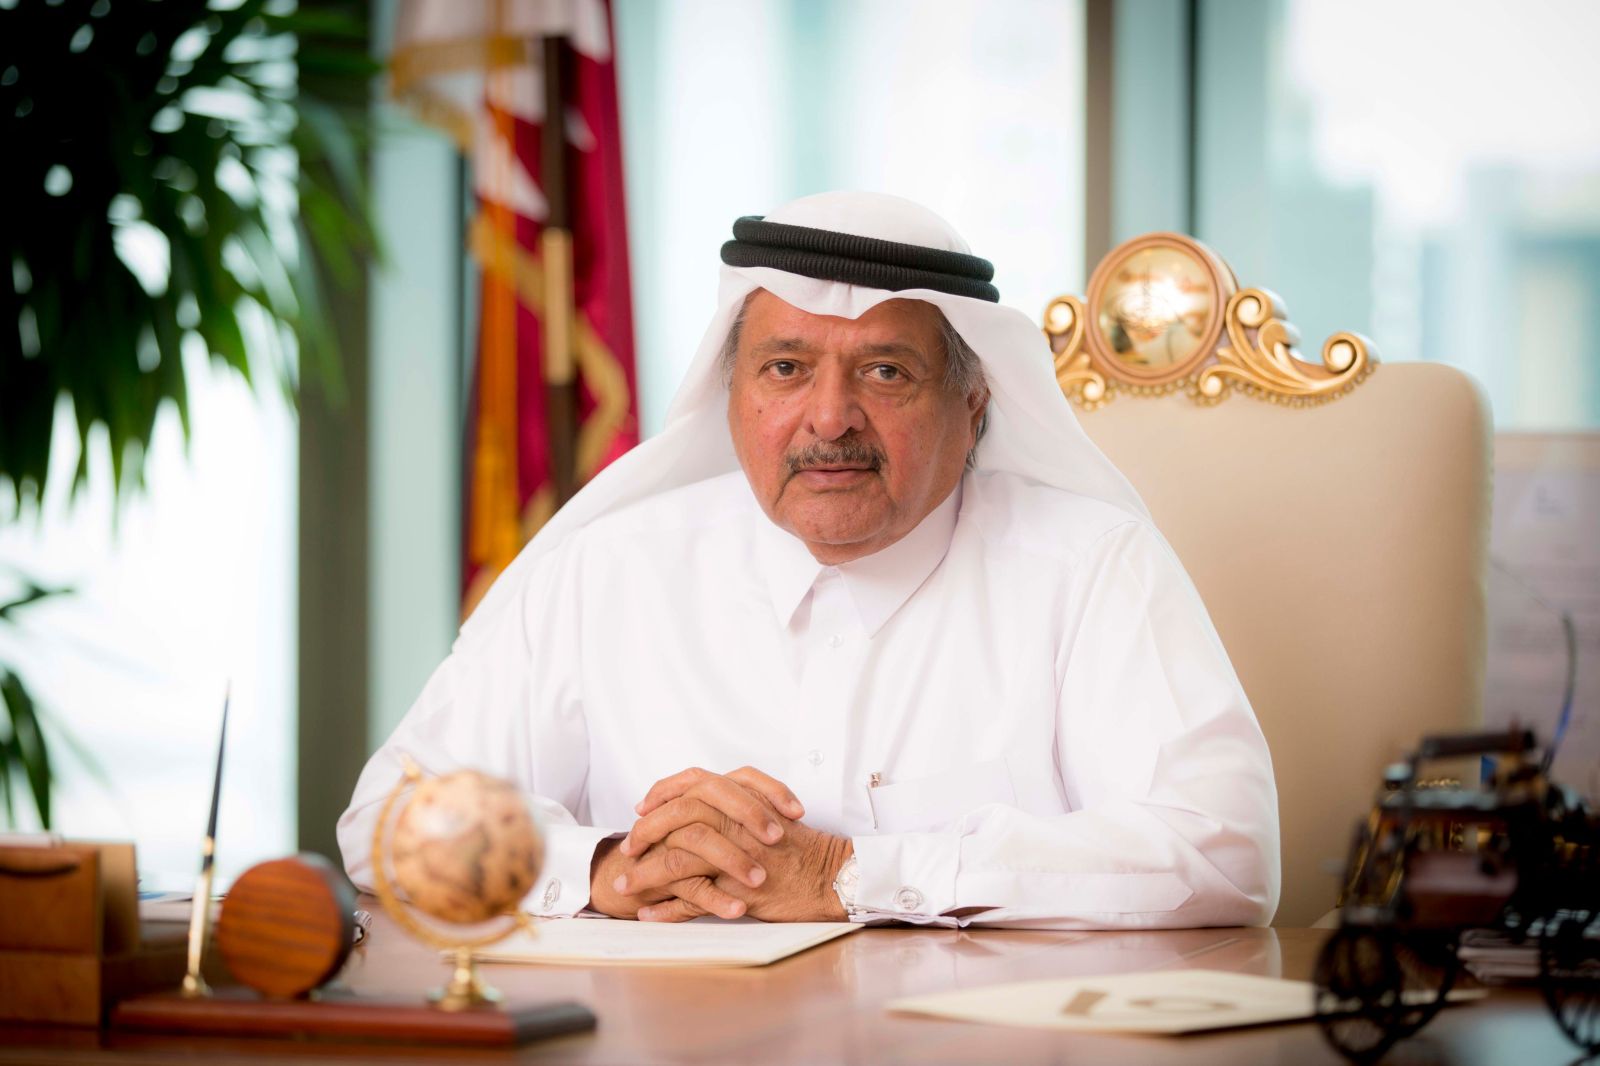 Sheikh Faisal Qassim Faisal Al Thani